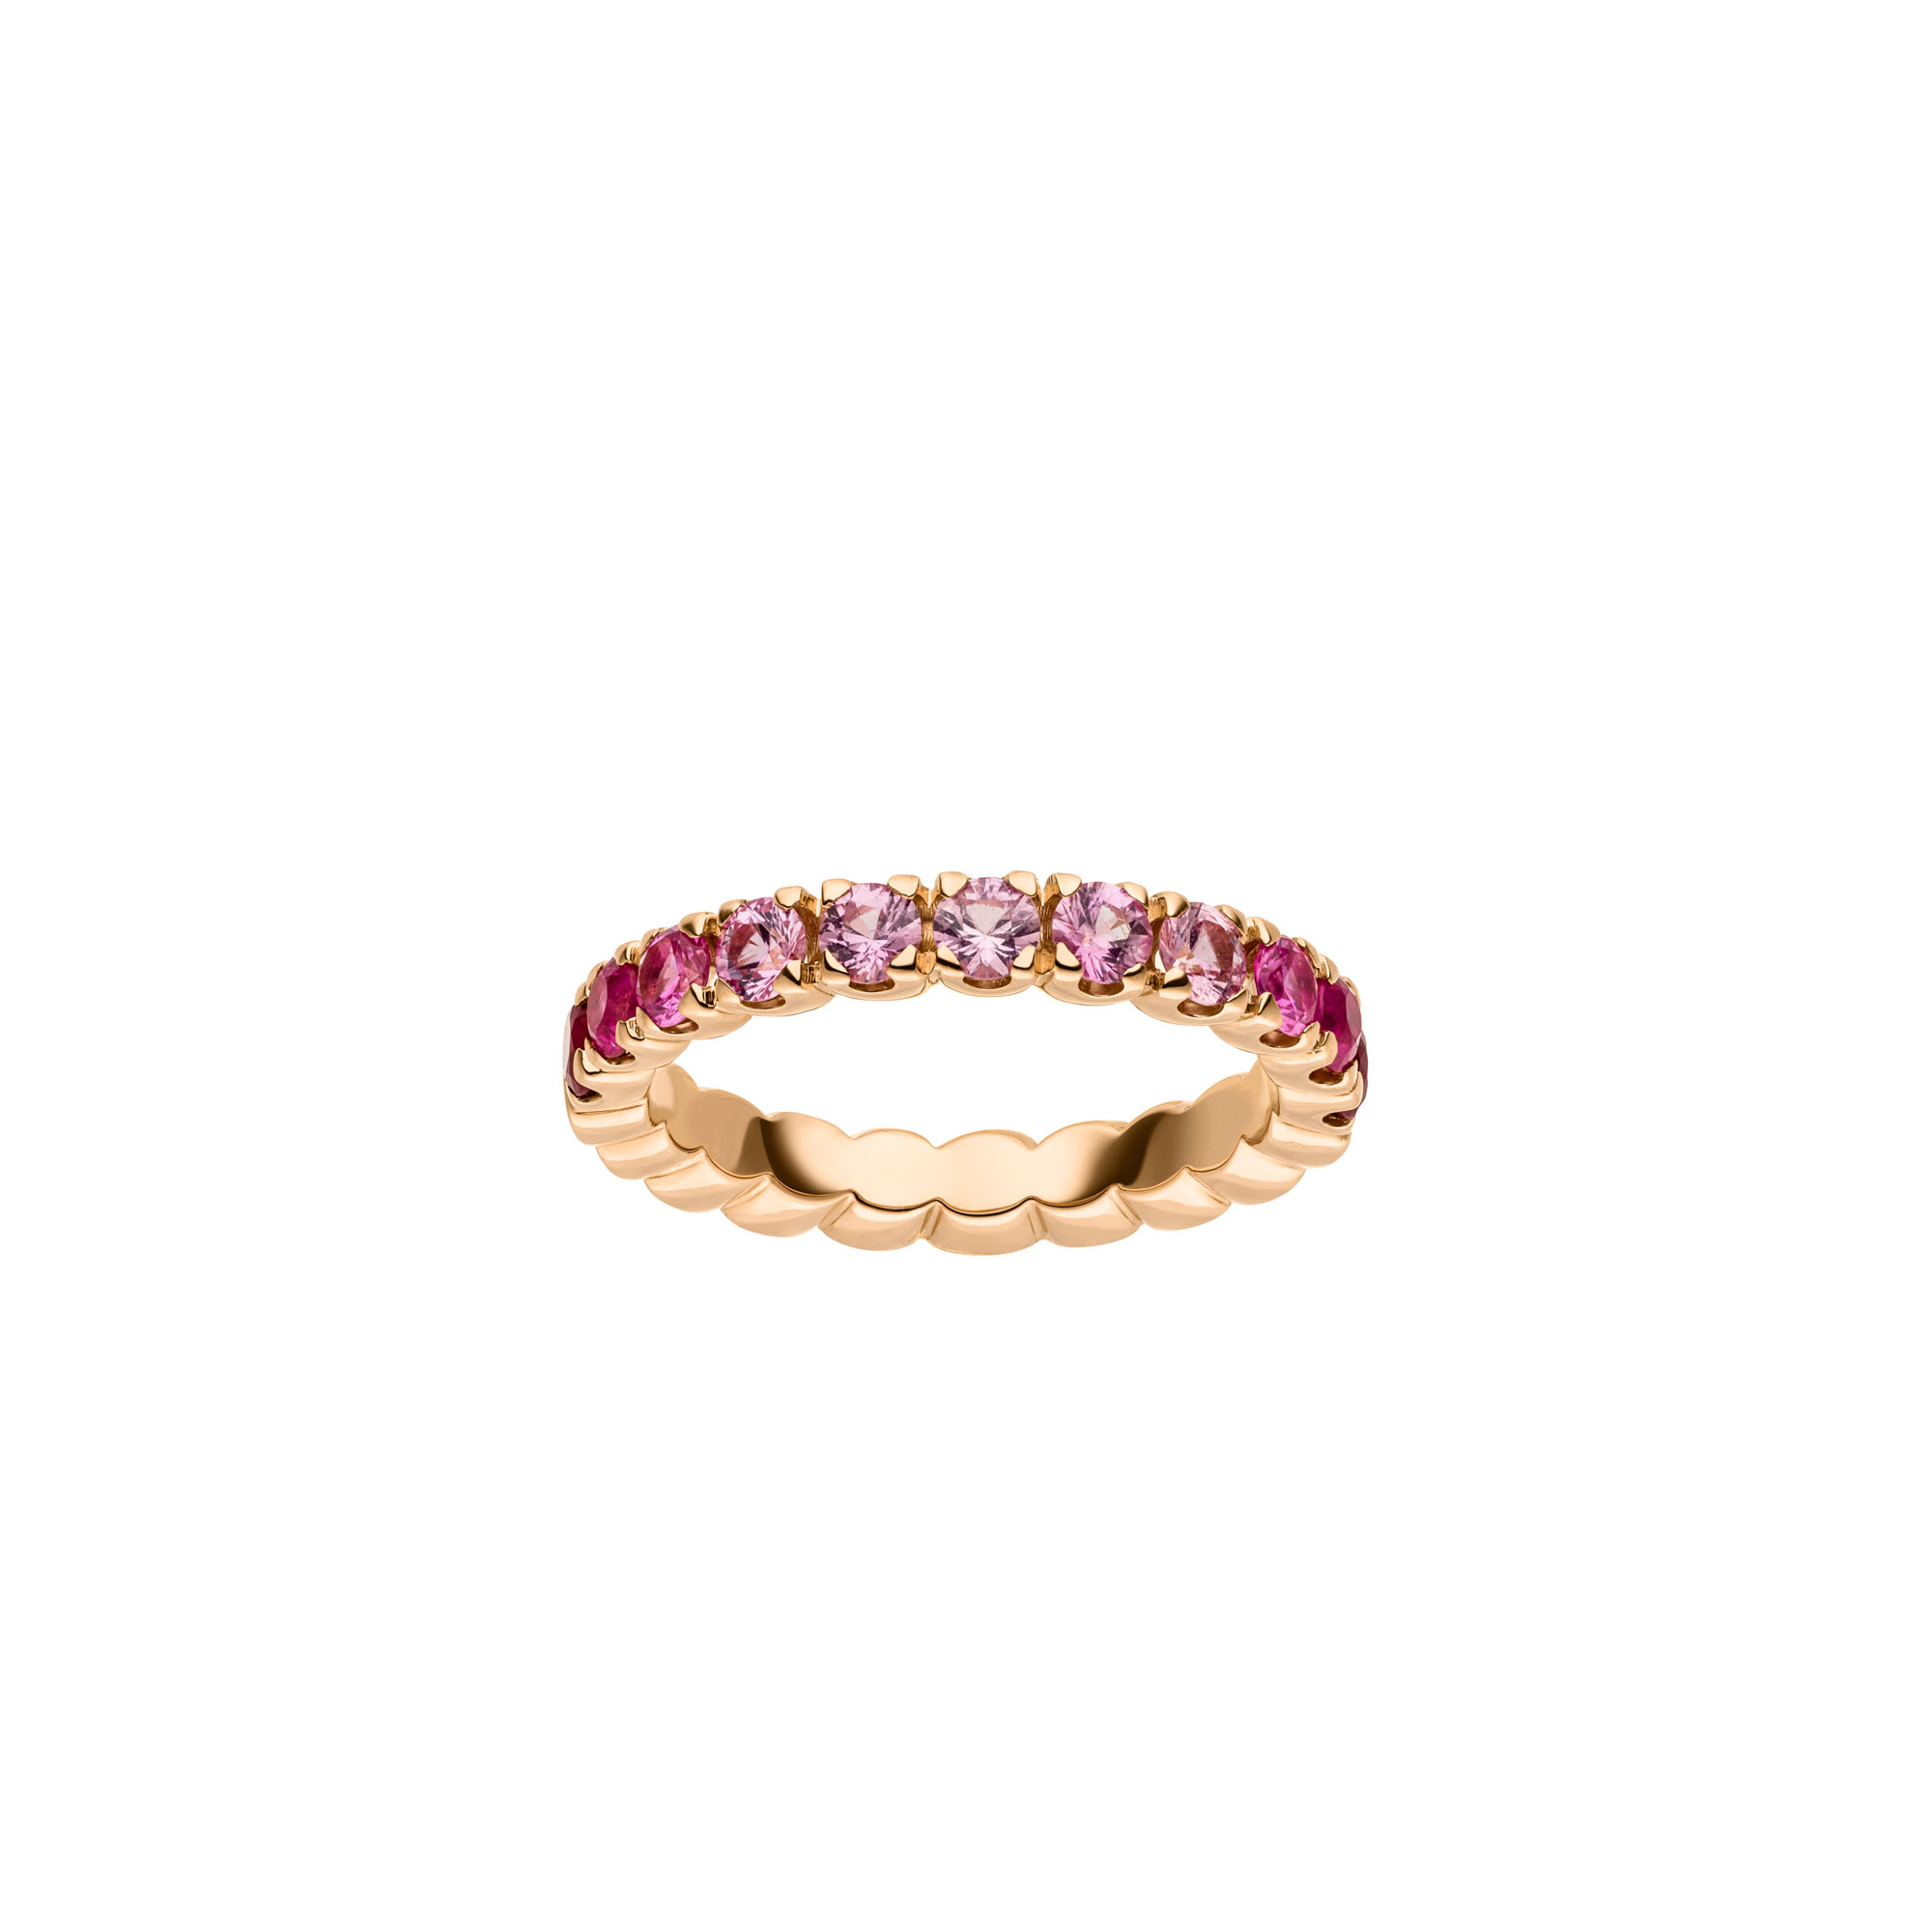 Roségold Ring mit pinken Saphiren und Rubinen von Kollektion Fridrich bei Juwelier Fridrich in München